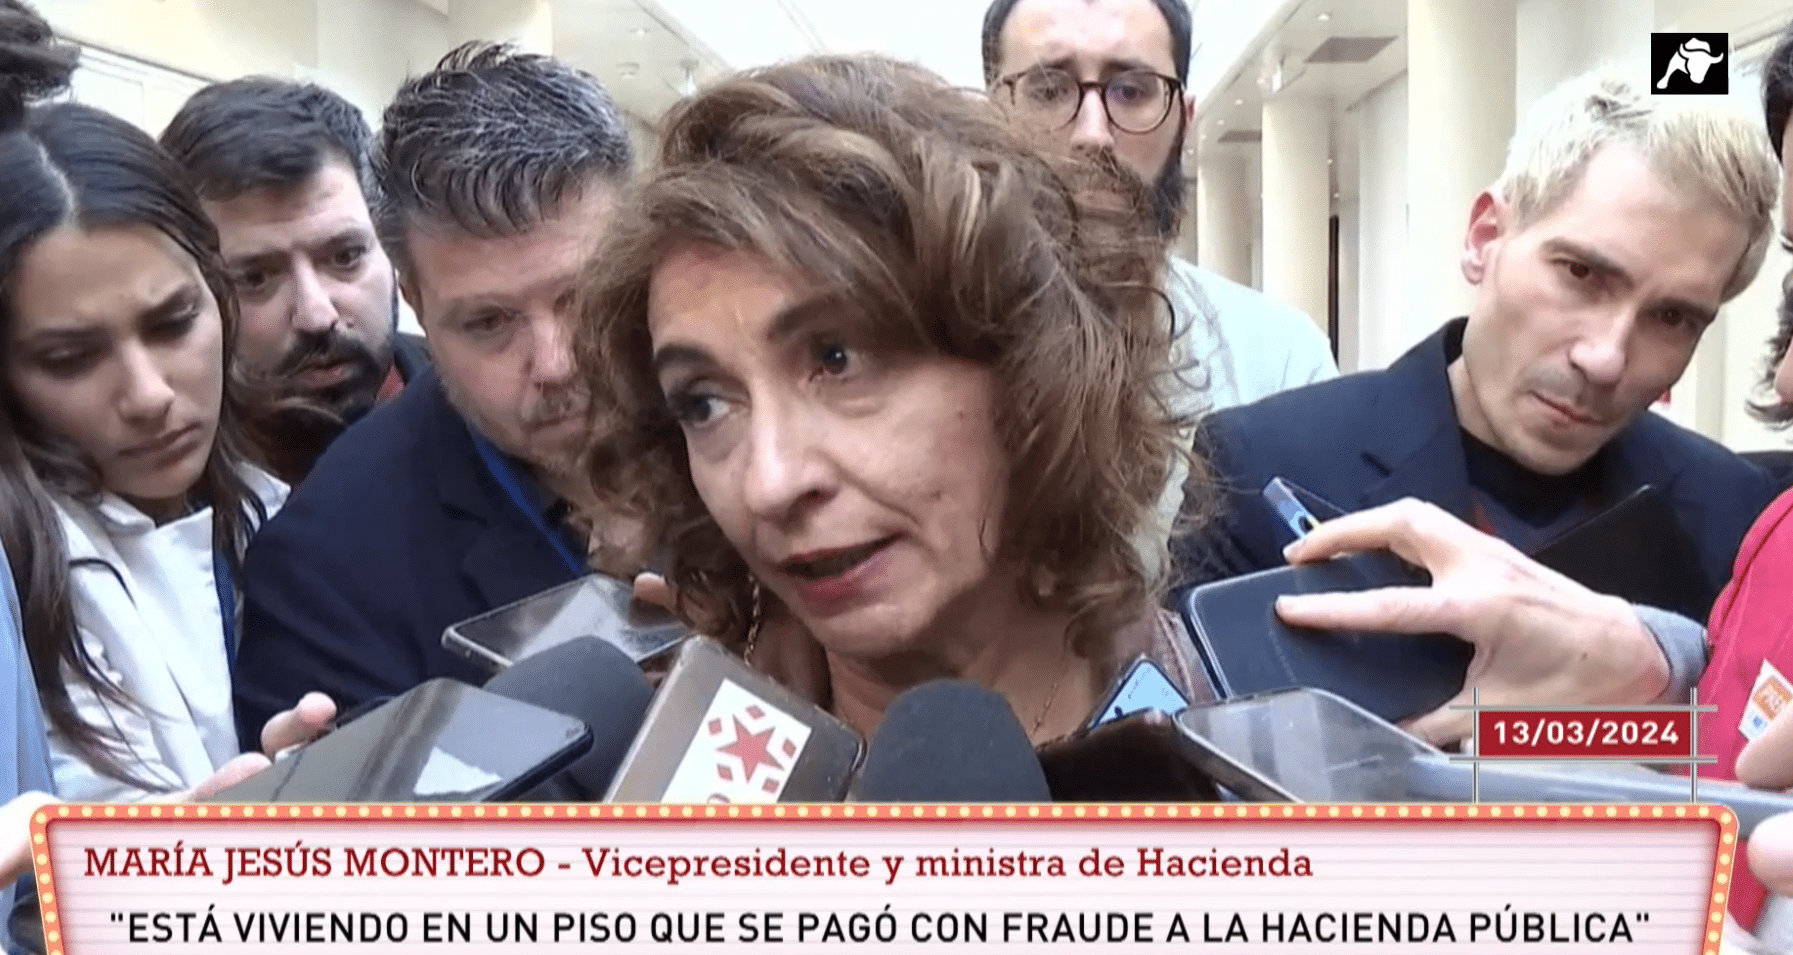 María Jesús Montero deja la política y se hace vidente: la viral portada ‘fake’ de El País